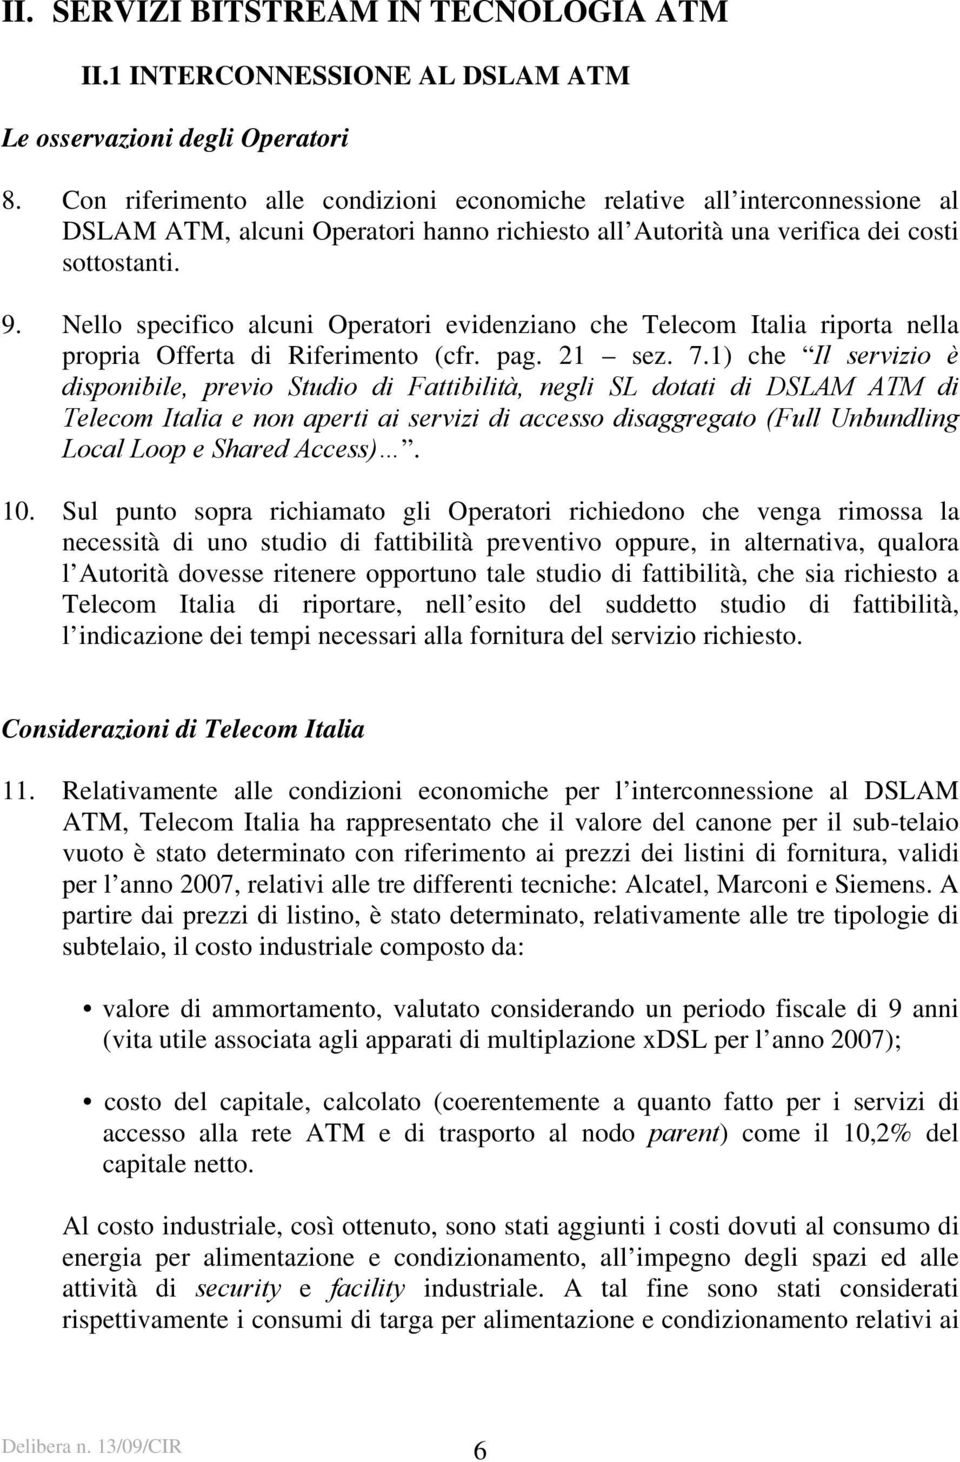 Nello specifico alcuni Operatori evidenziano che Telecom Italia riporta nella propria Offerta di Riferimento (cfr. pag. 21 sez. 7.